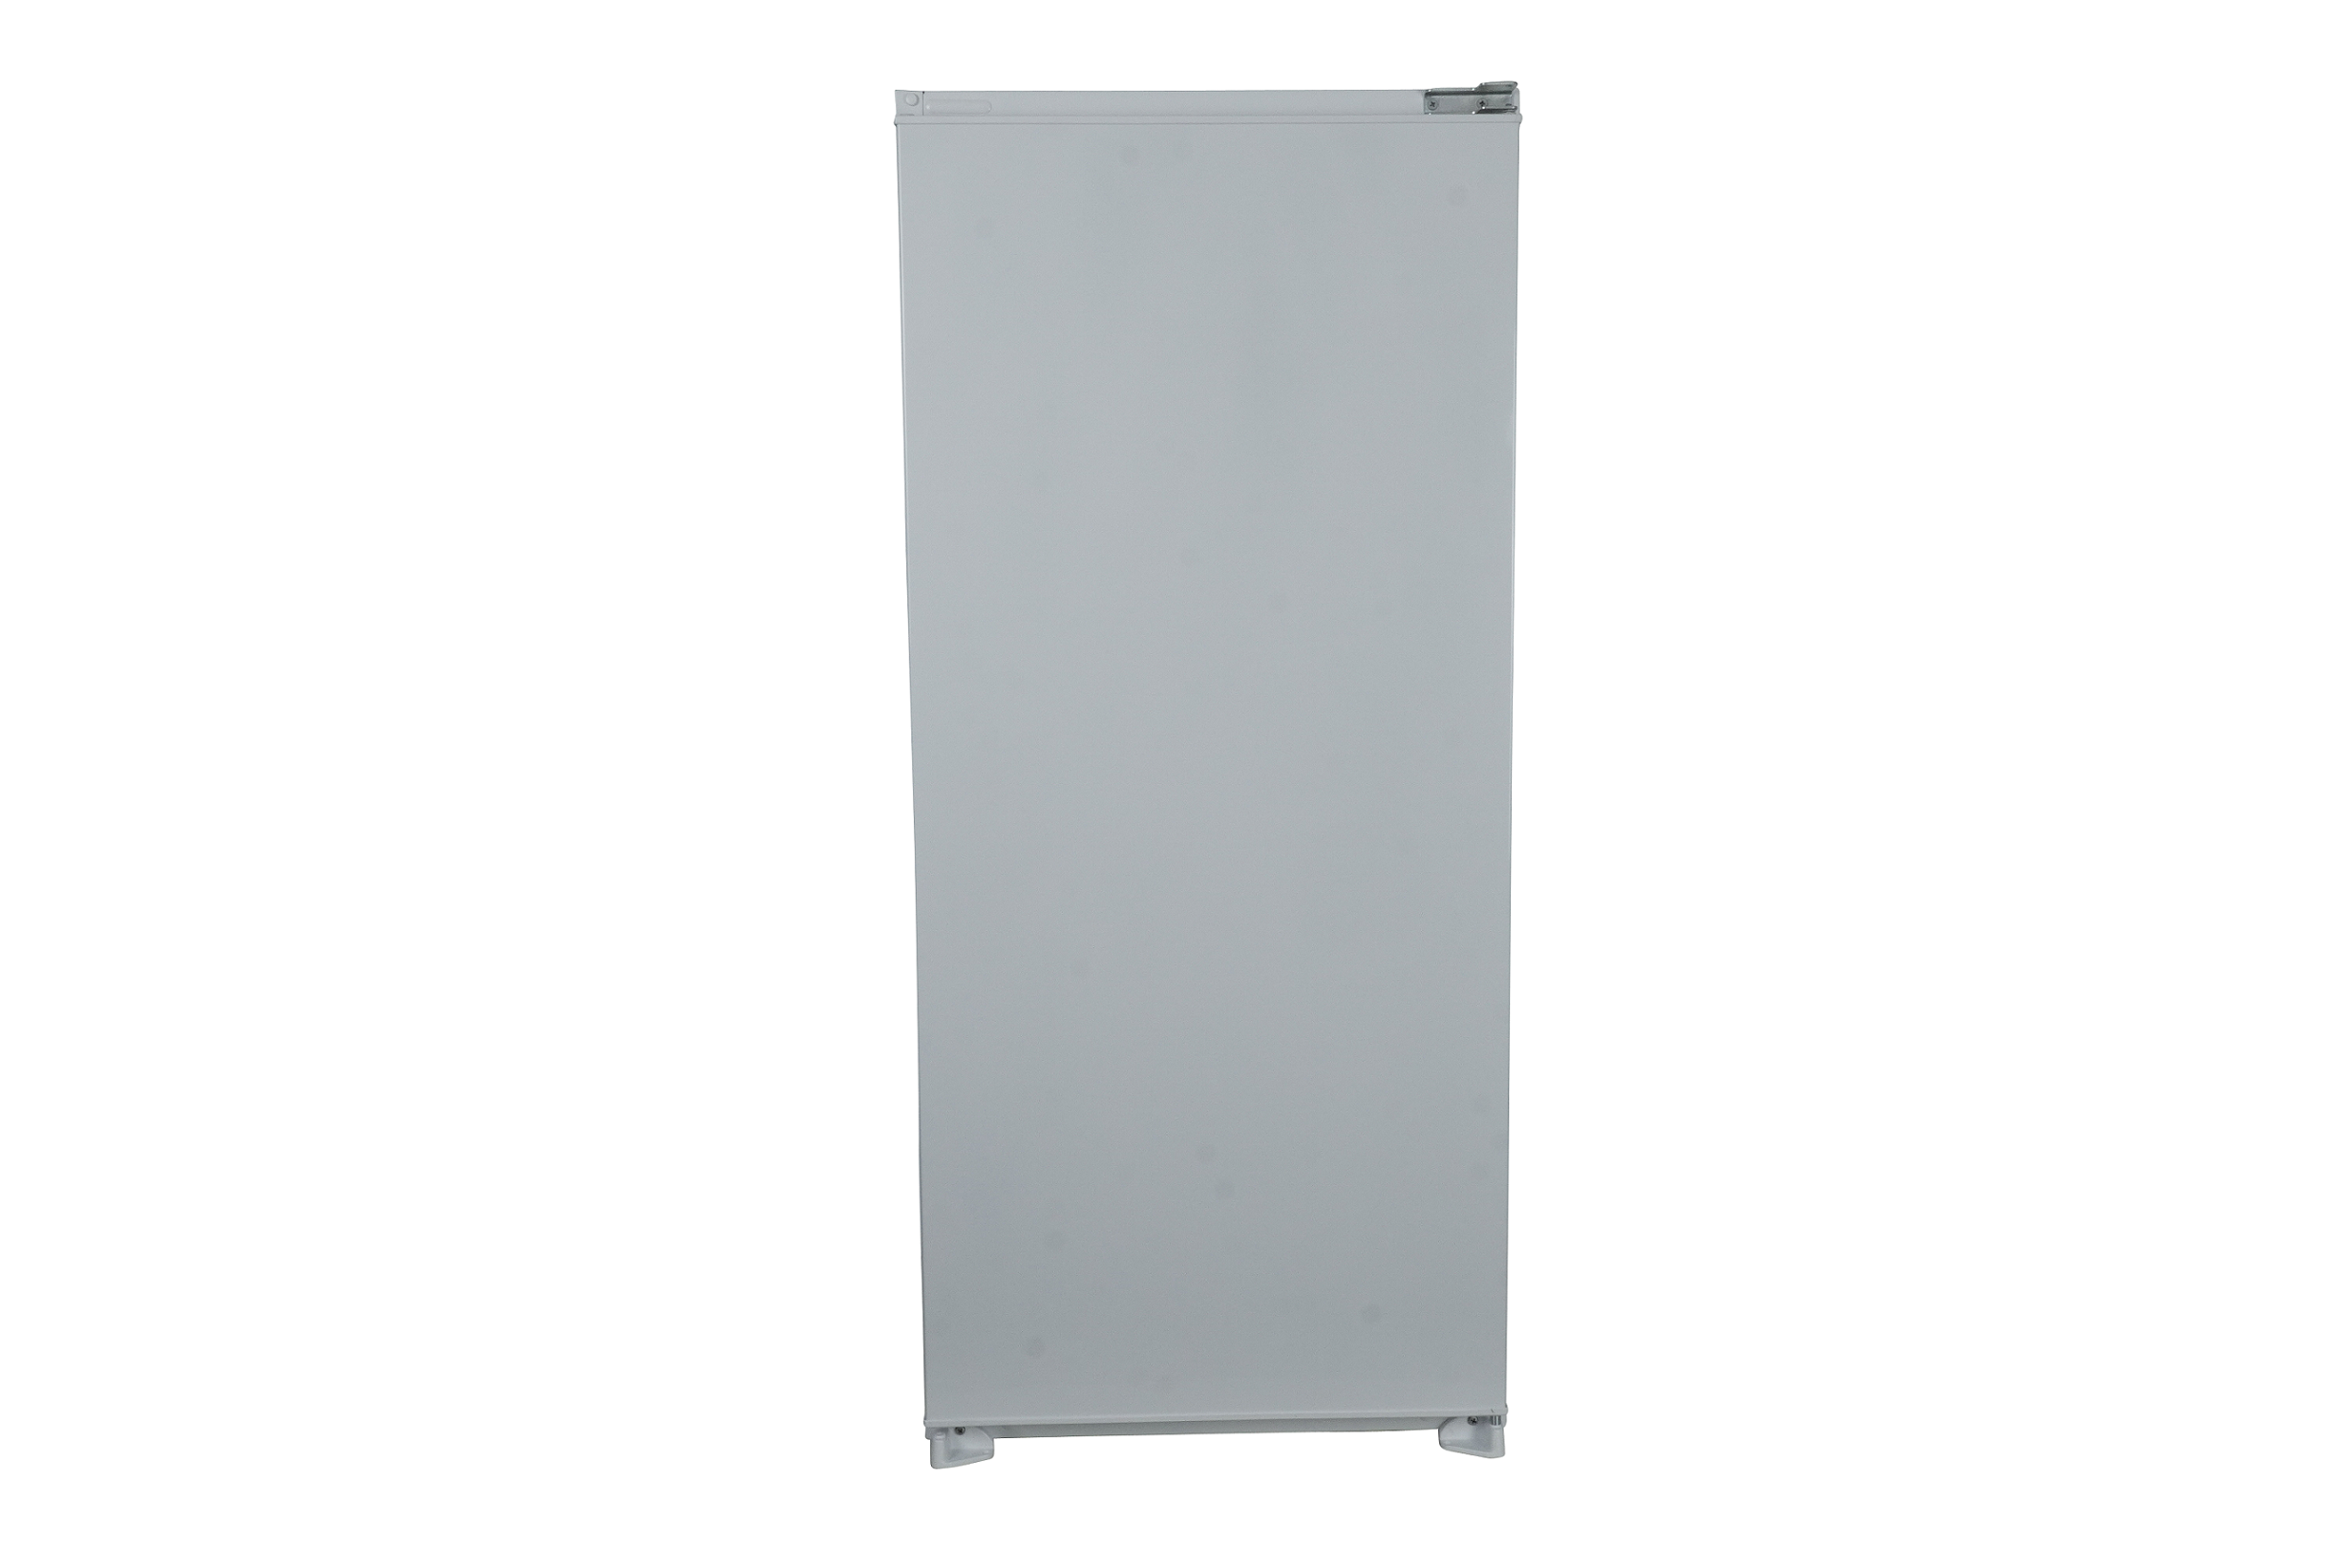 Kühlschrank 4* Gefrierfach Einbaukühlschrank Schlepptür 122 cm Respekta